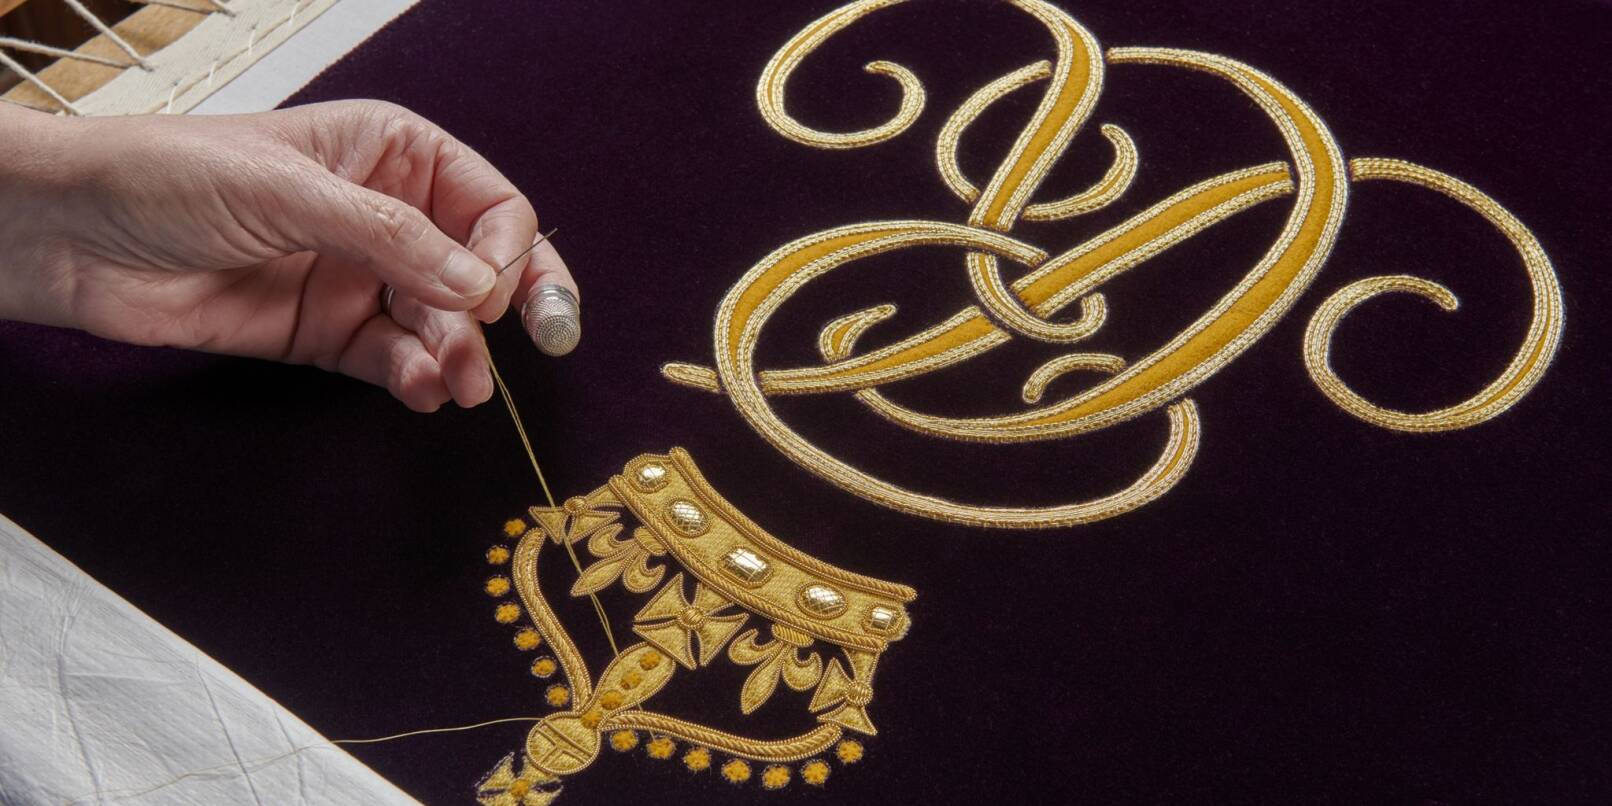 Ein Mitglied der Royal School of Needlework stickt den Schriftzug von Queen Camilla von Hand auf deren Robe.